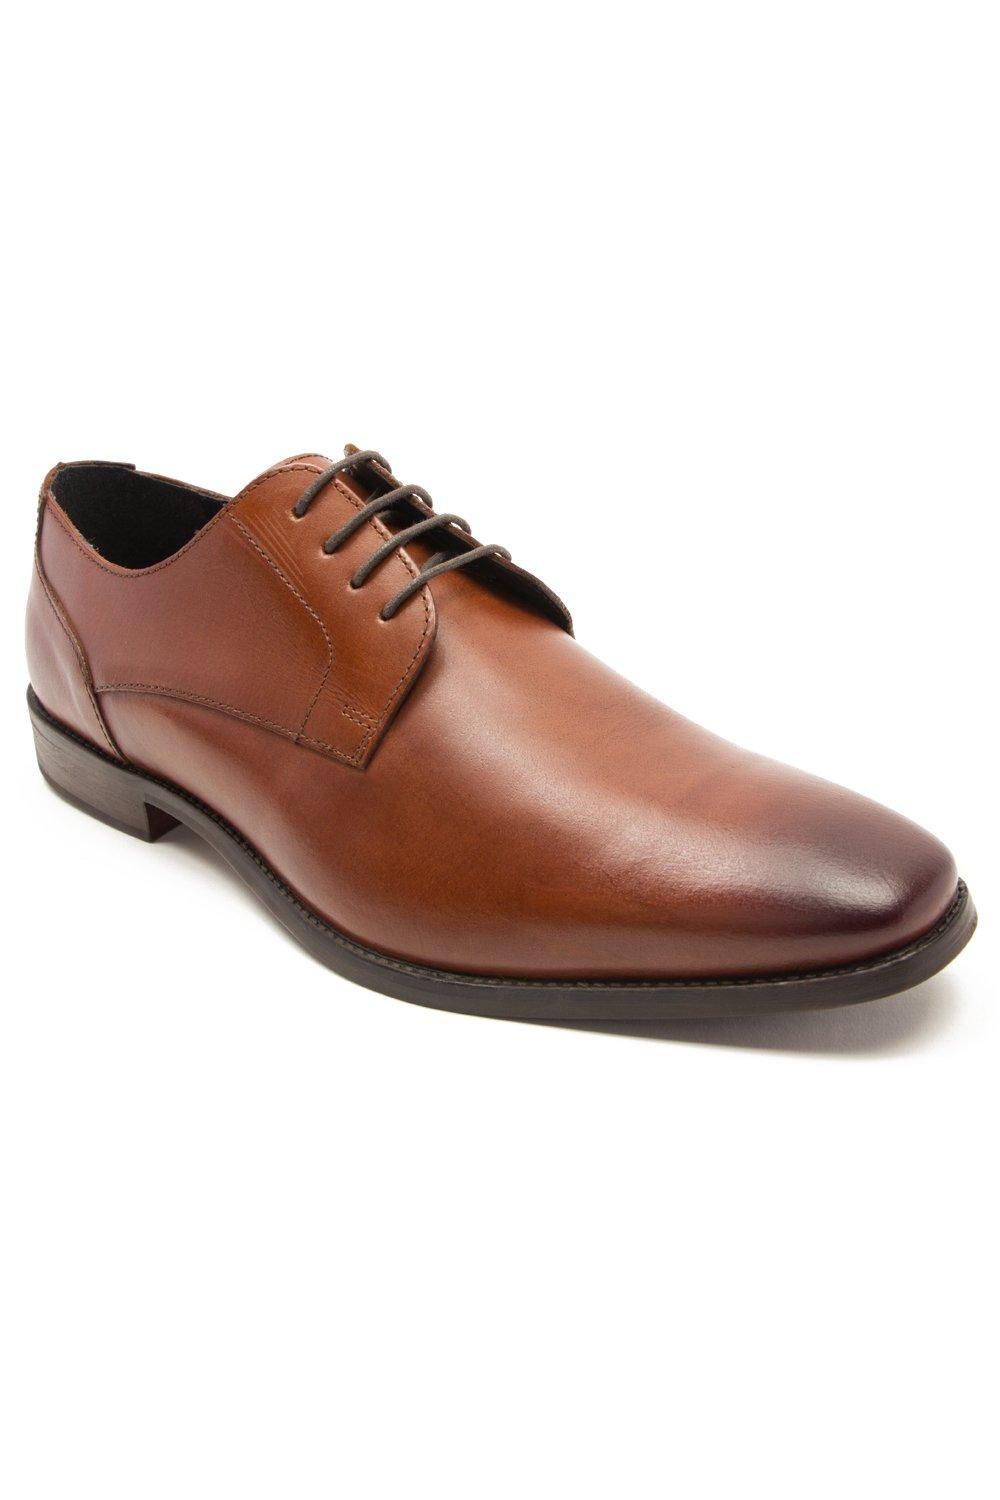 Формальные кожаные туфли дерби на шнуровке 'Falcon' Thomas Crick, коричневый мужские кожаные деловые туфли на шнуровке для офиса зеленый